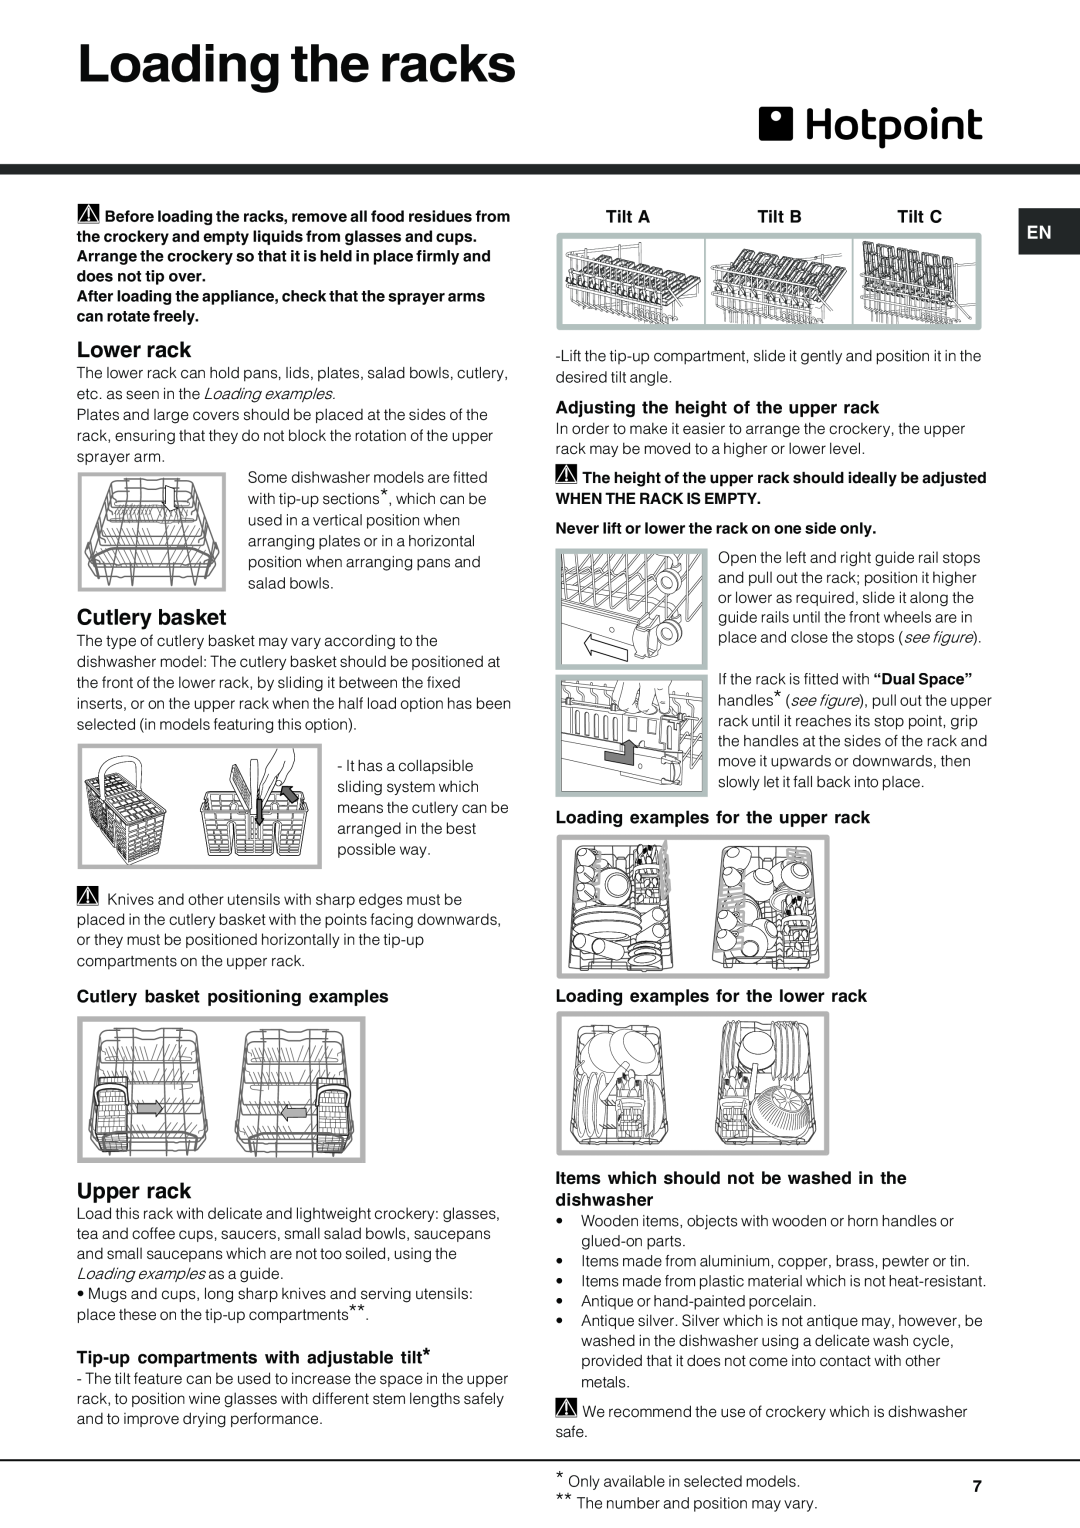 Hotpoint SDL 510 manual Loading the racks, Lower rack, Upper rack, Cutlery basket positioning examples, Tilt A, Tilt B 